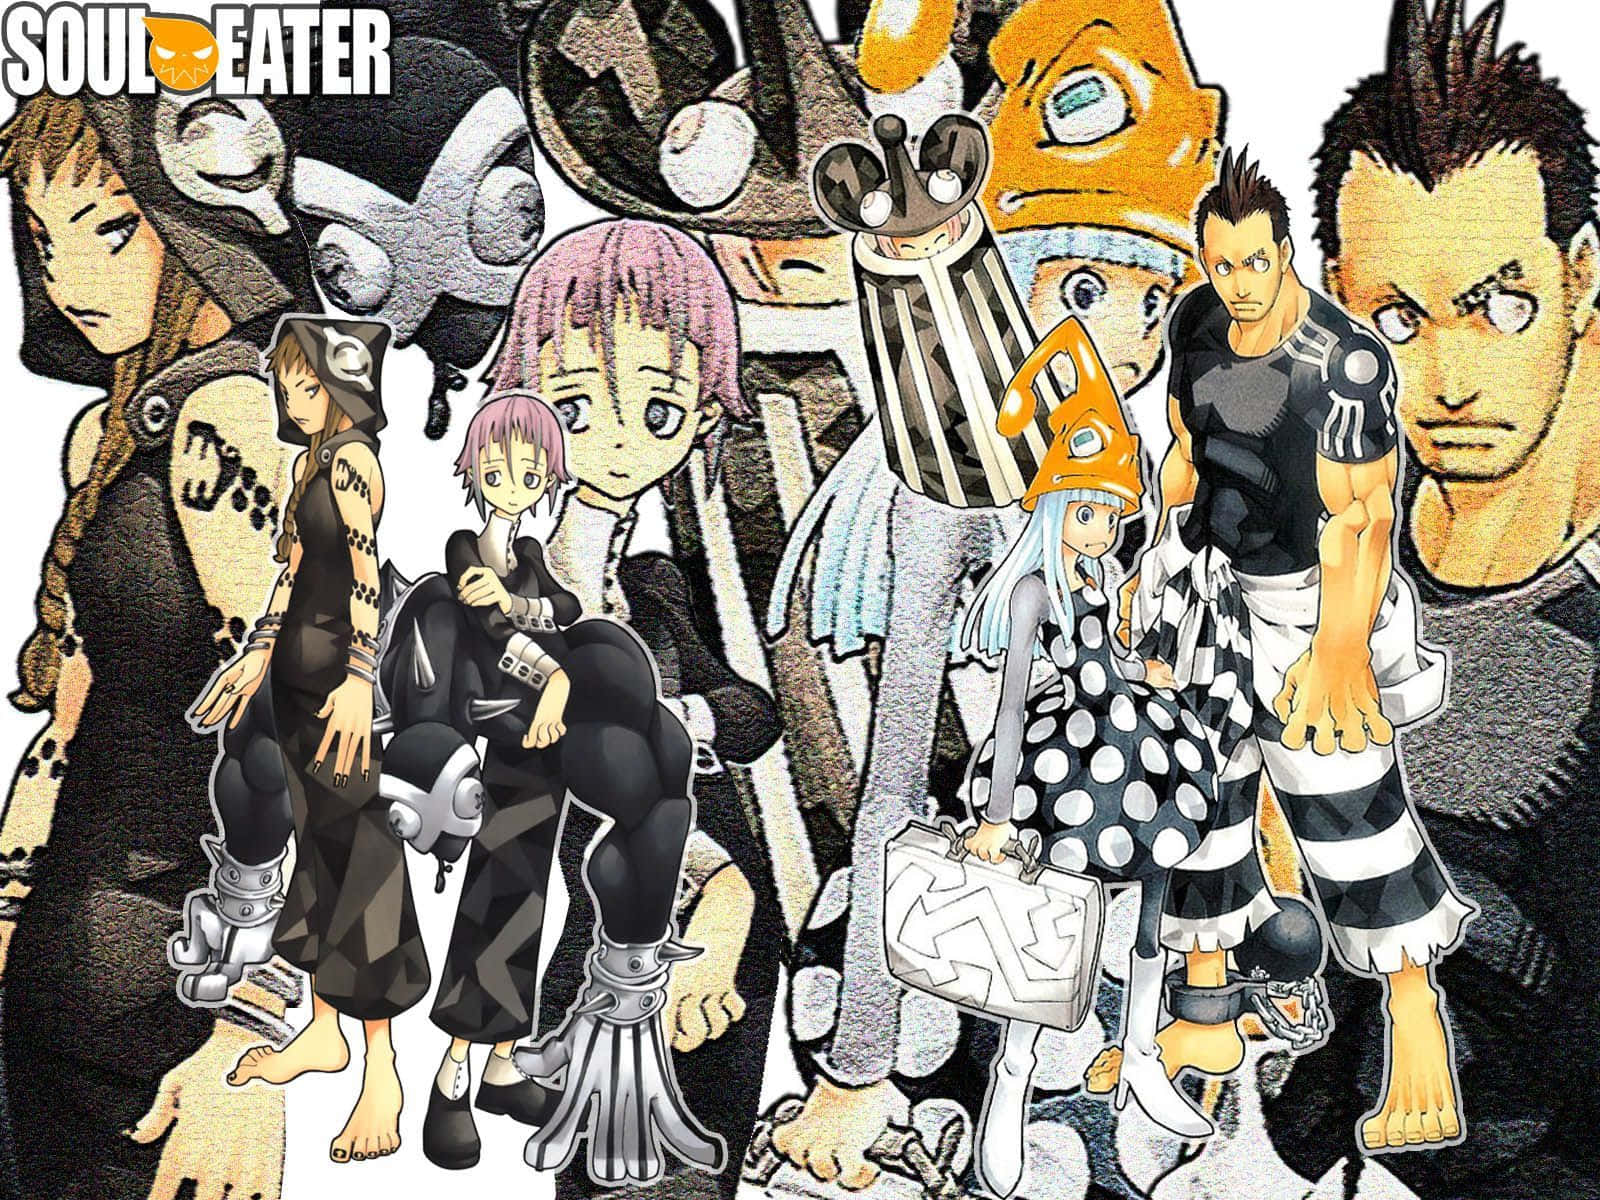 Følg eventyret om meisterne og deres våbenpartnere i Soul Eater manga-serien! Wallpaper